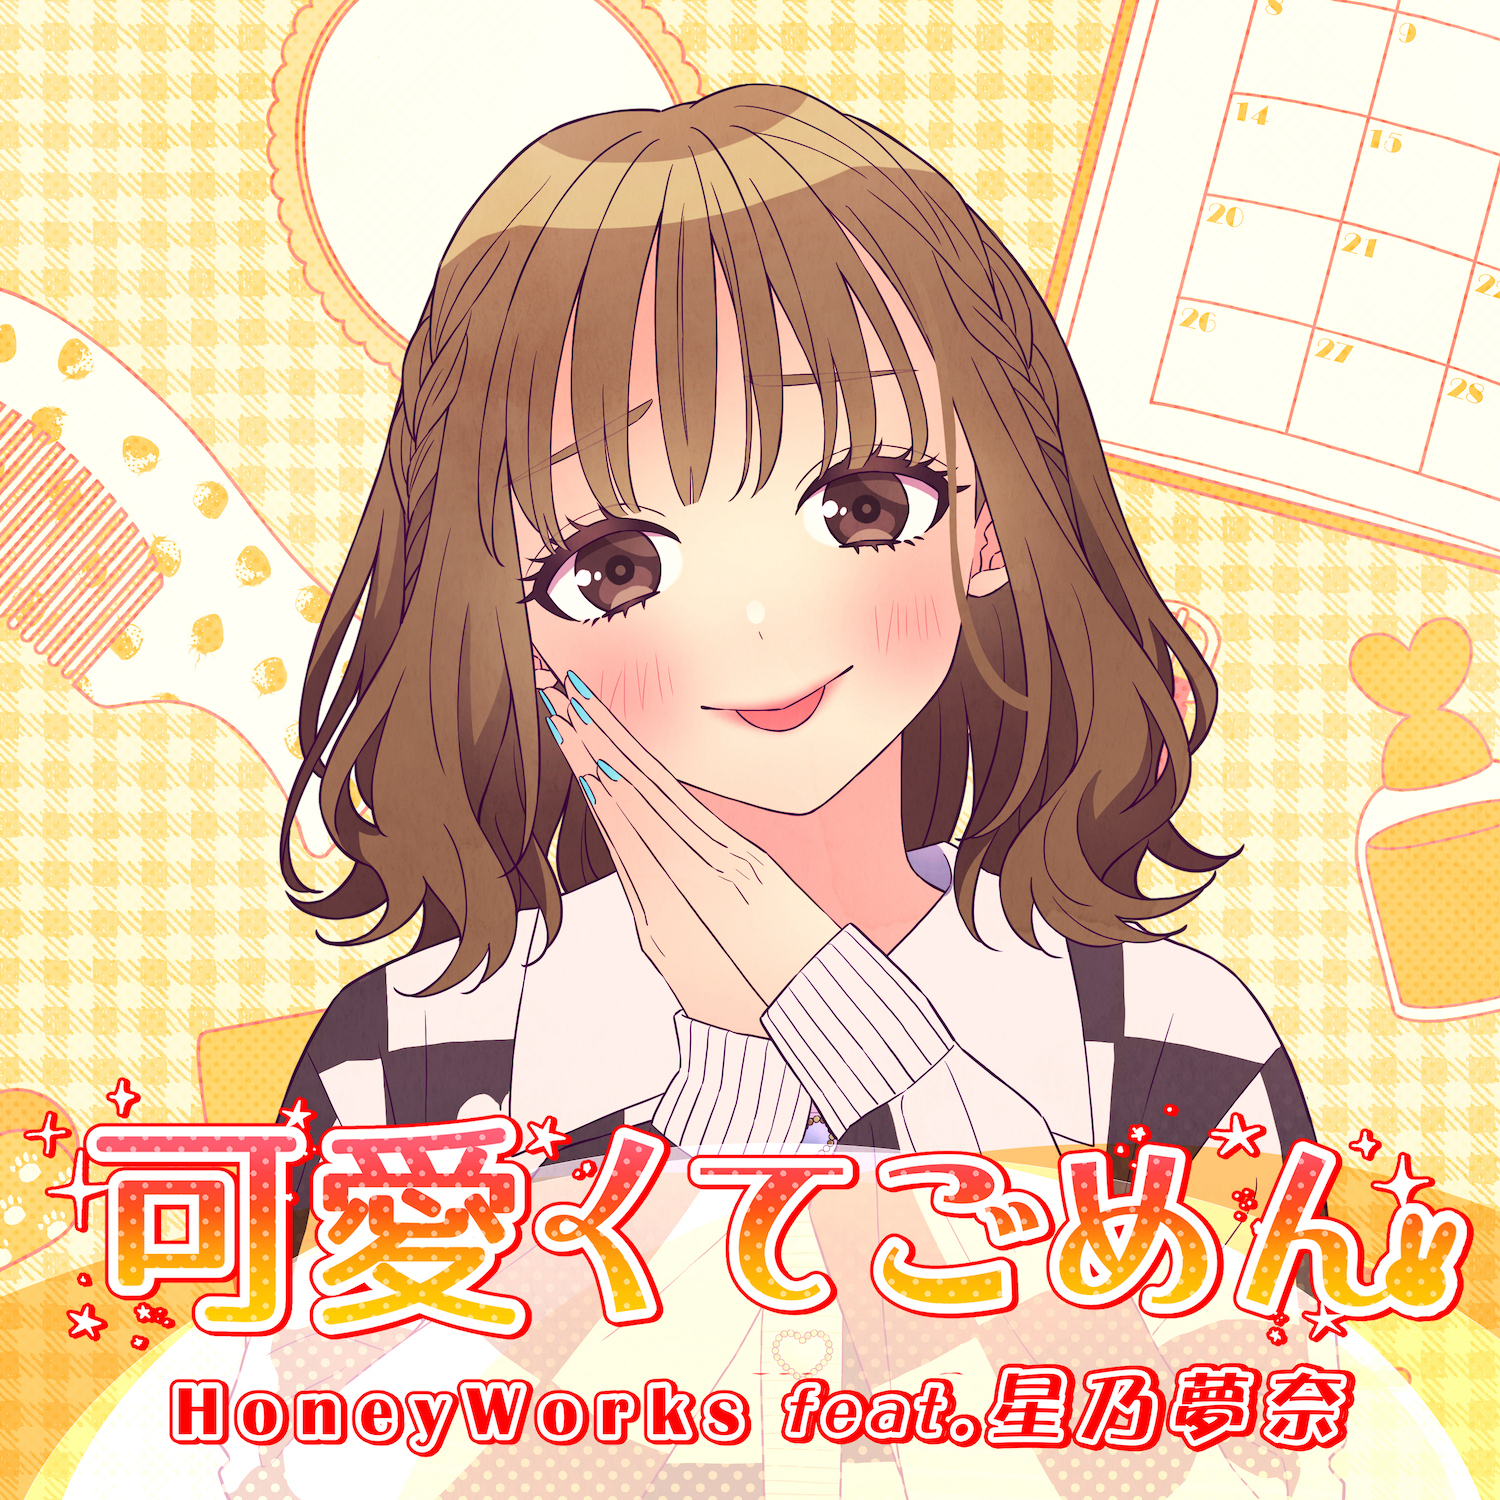 星乃梦奈翻唱HoneyWorks歌曲「可爱くてごめん（feat.星乃梦奈）」数位发行MV同步公开 - itotii